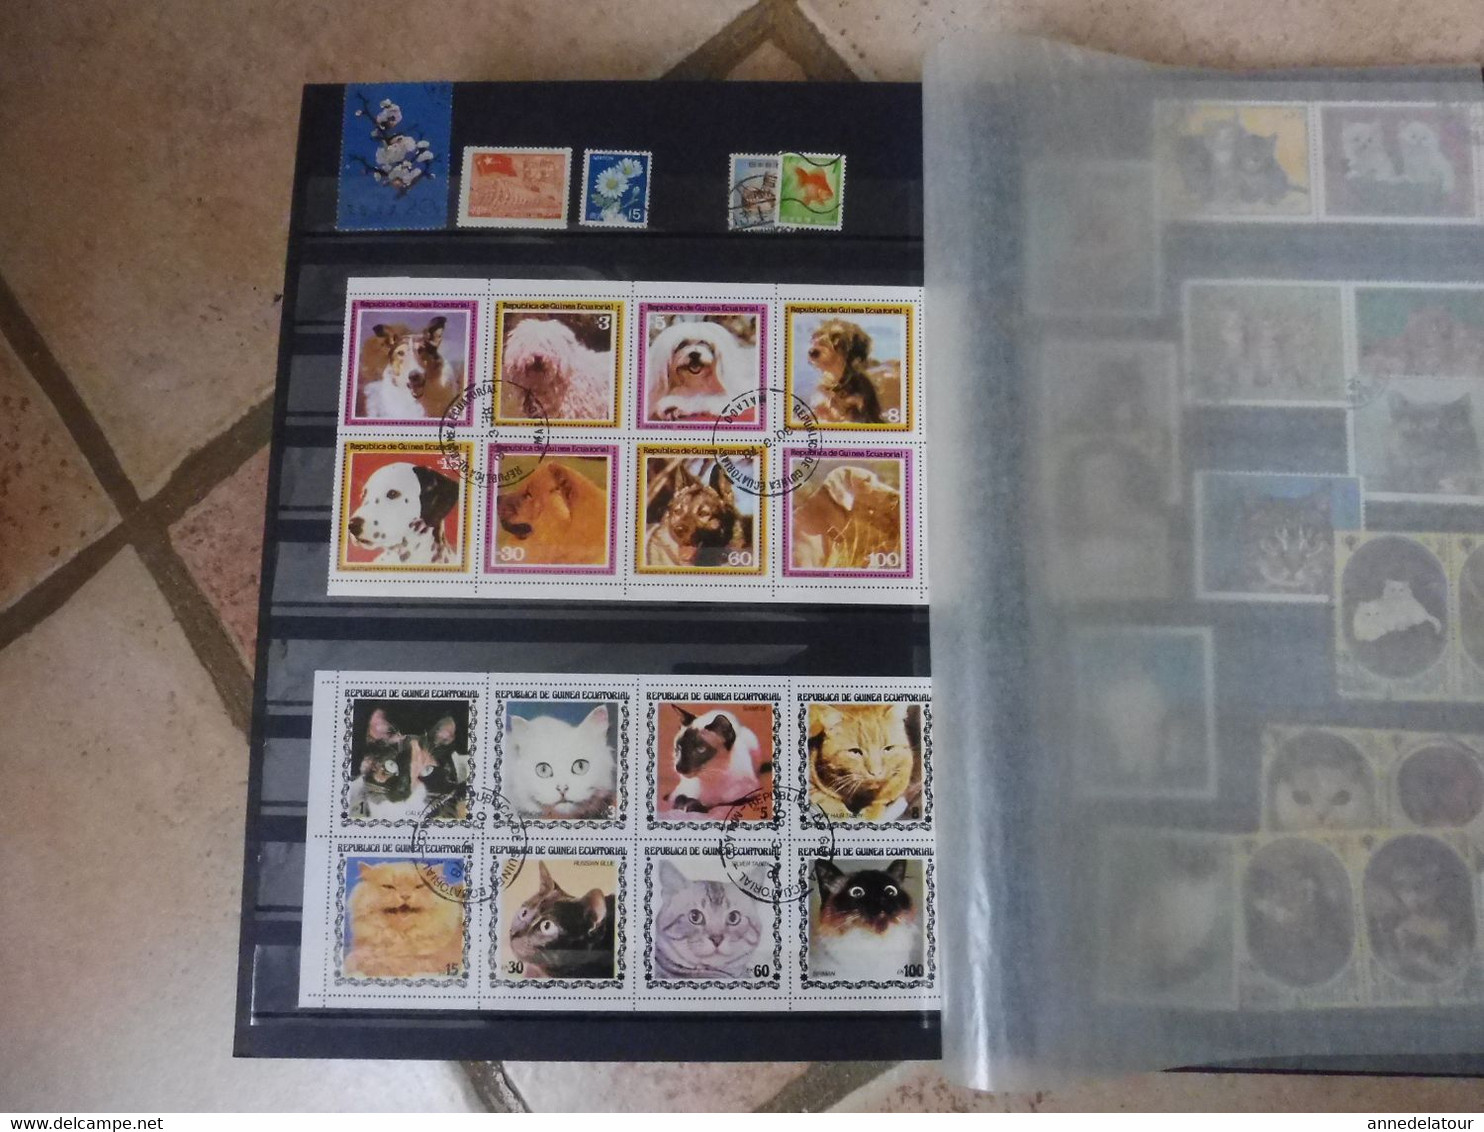 Album de timbres divers (non oblitérés et oblitérés )